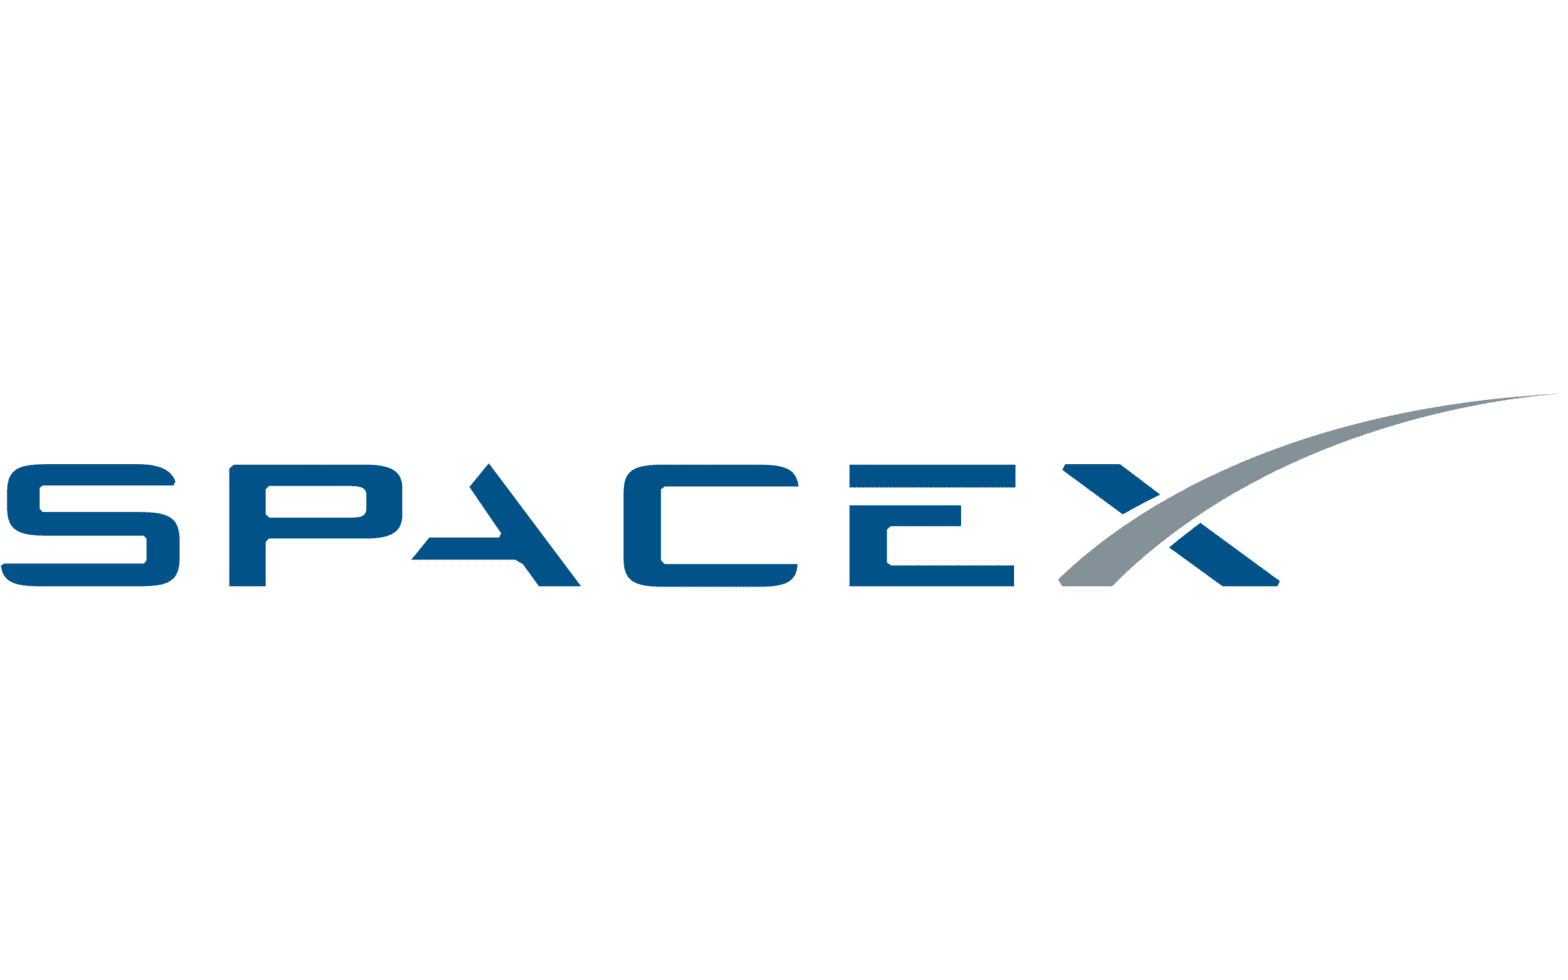 SpaceX פיטרה עובדים שהעזו לבקר את אילון מאסק – ועכשיו תשלם להם פיצויים